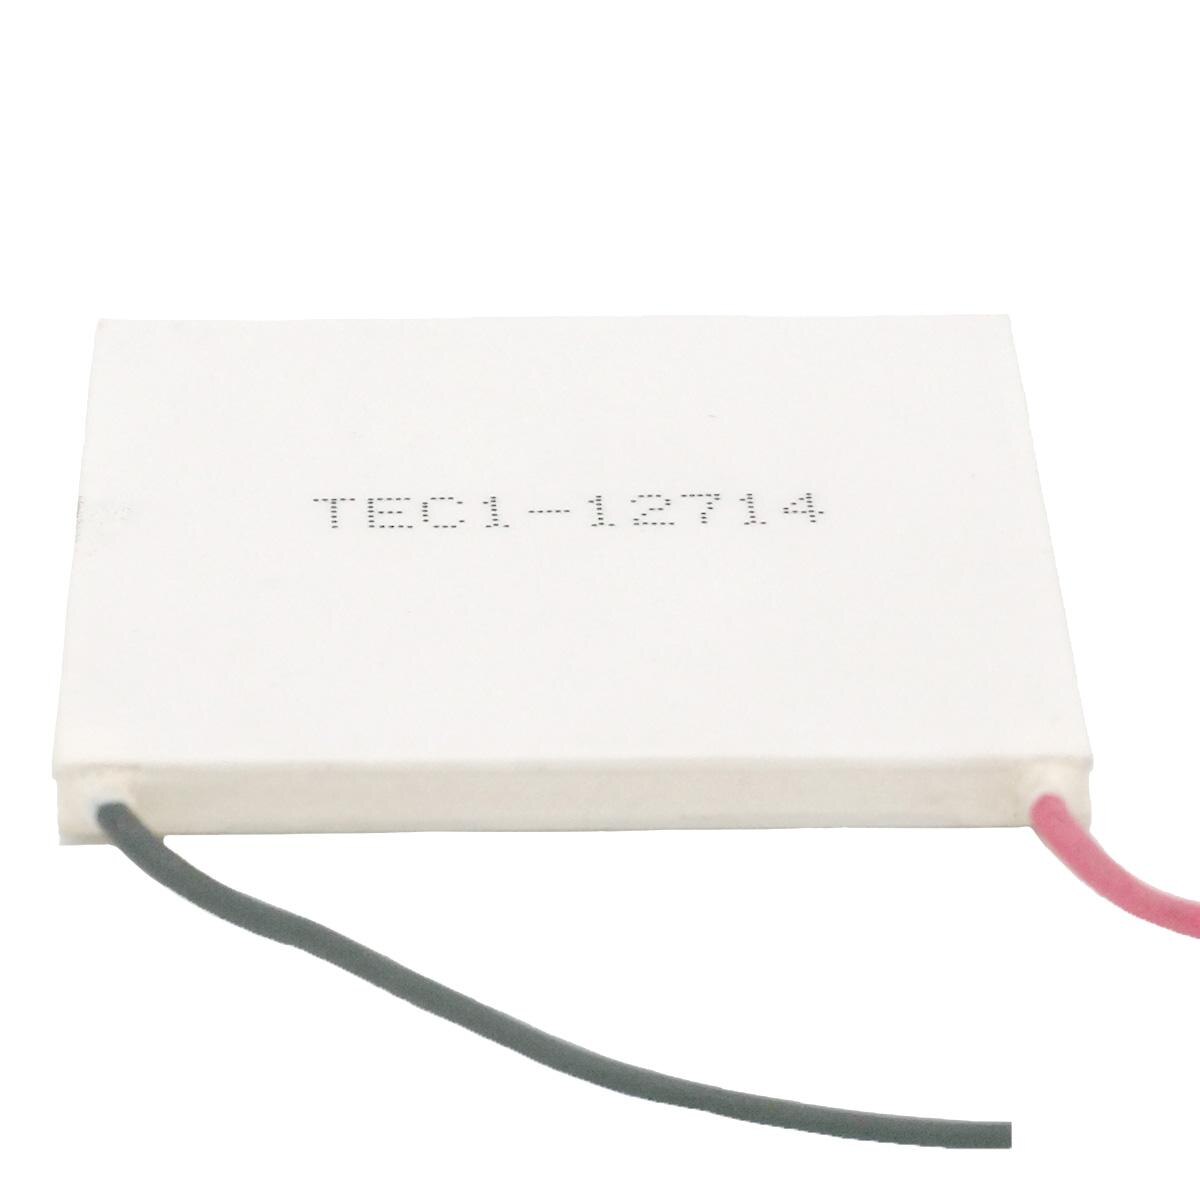 Plaque de refroidissement thermoélectrique Peltier pour dissipateur thermique, 50x50mm, Module de réfrigération 12V 14A, à monter soi-même, TEC1-12714